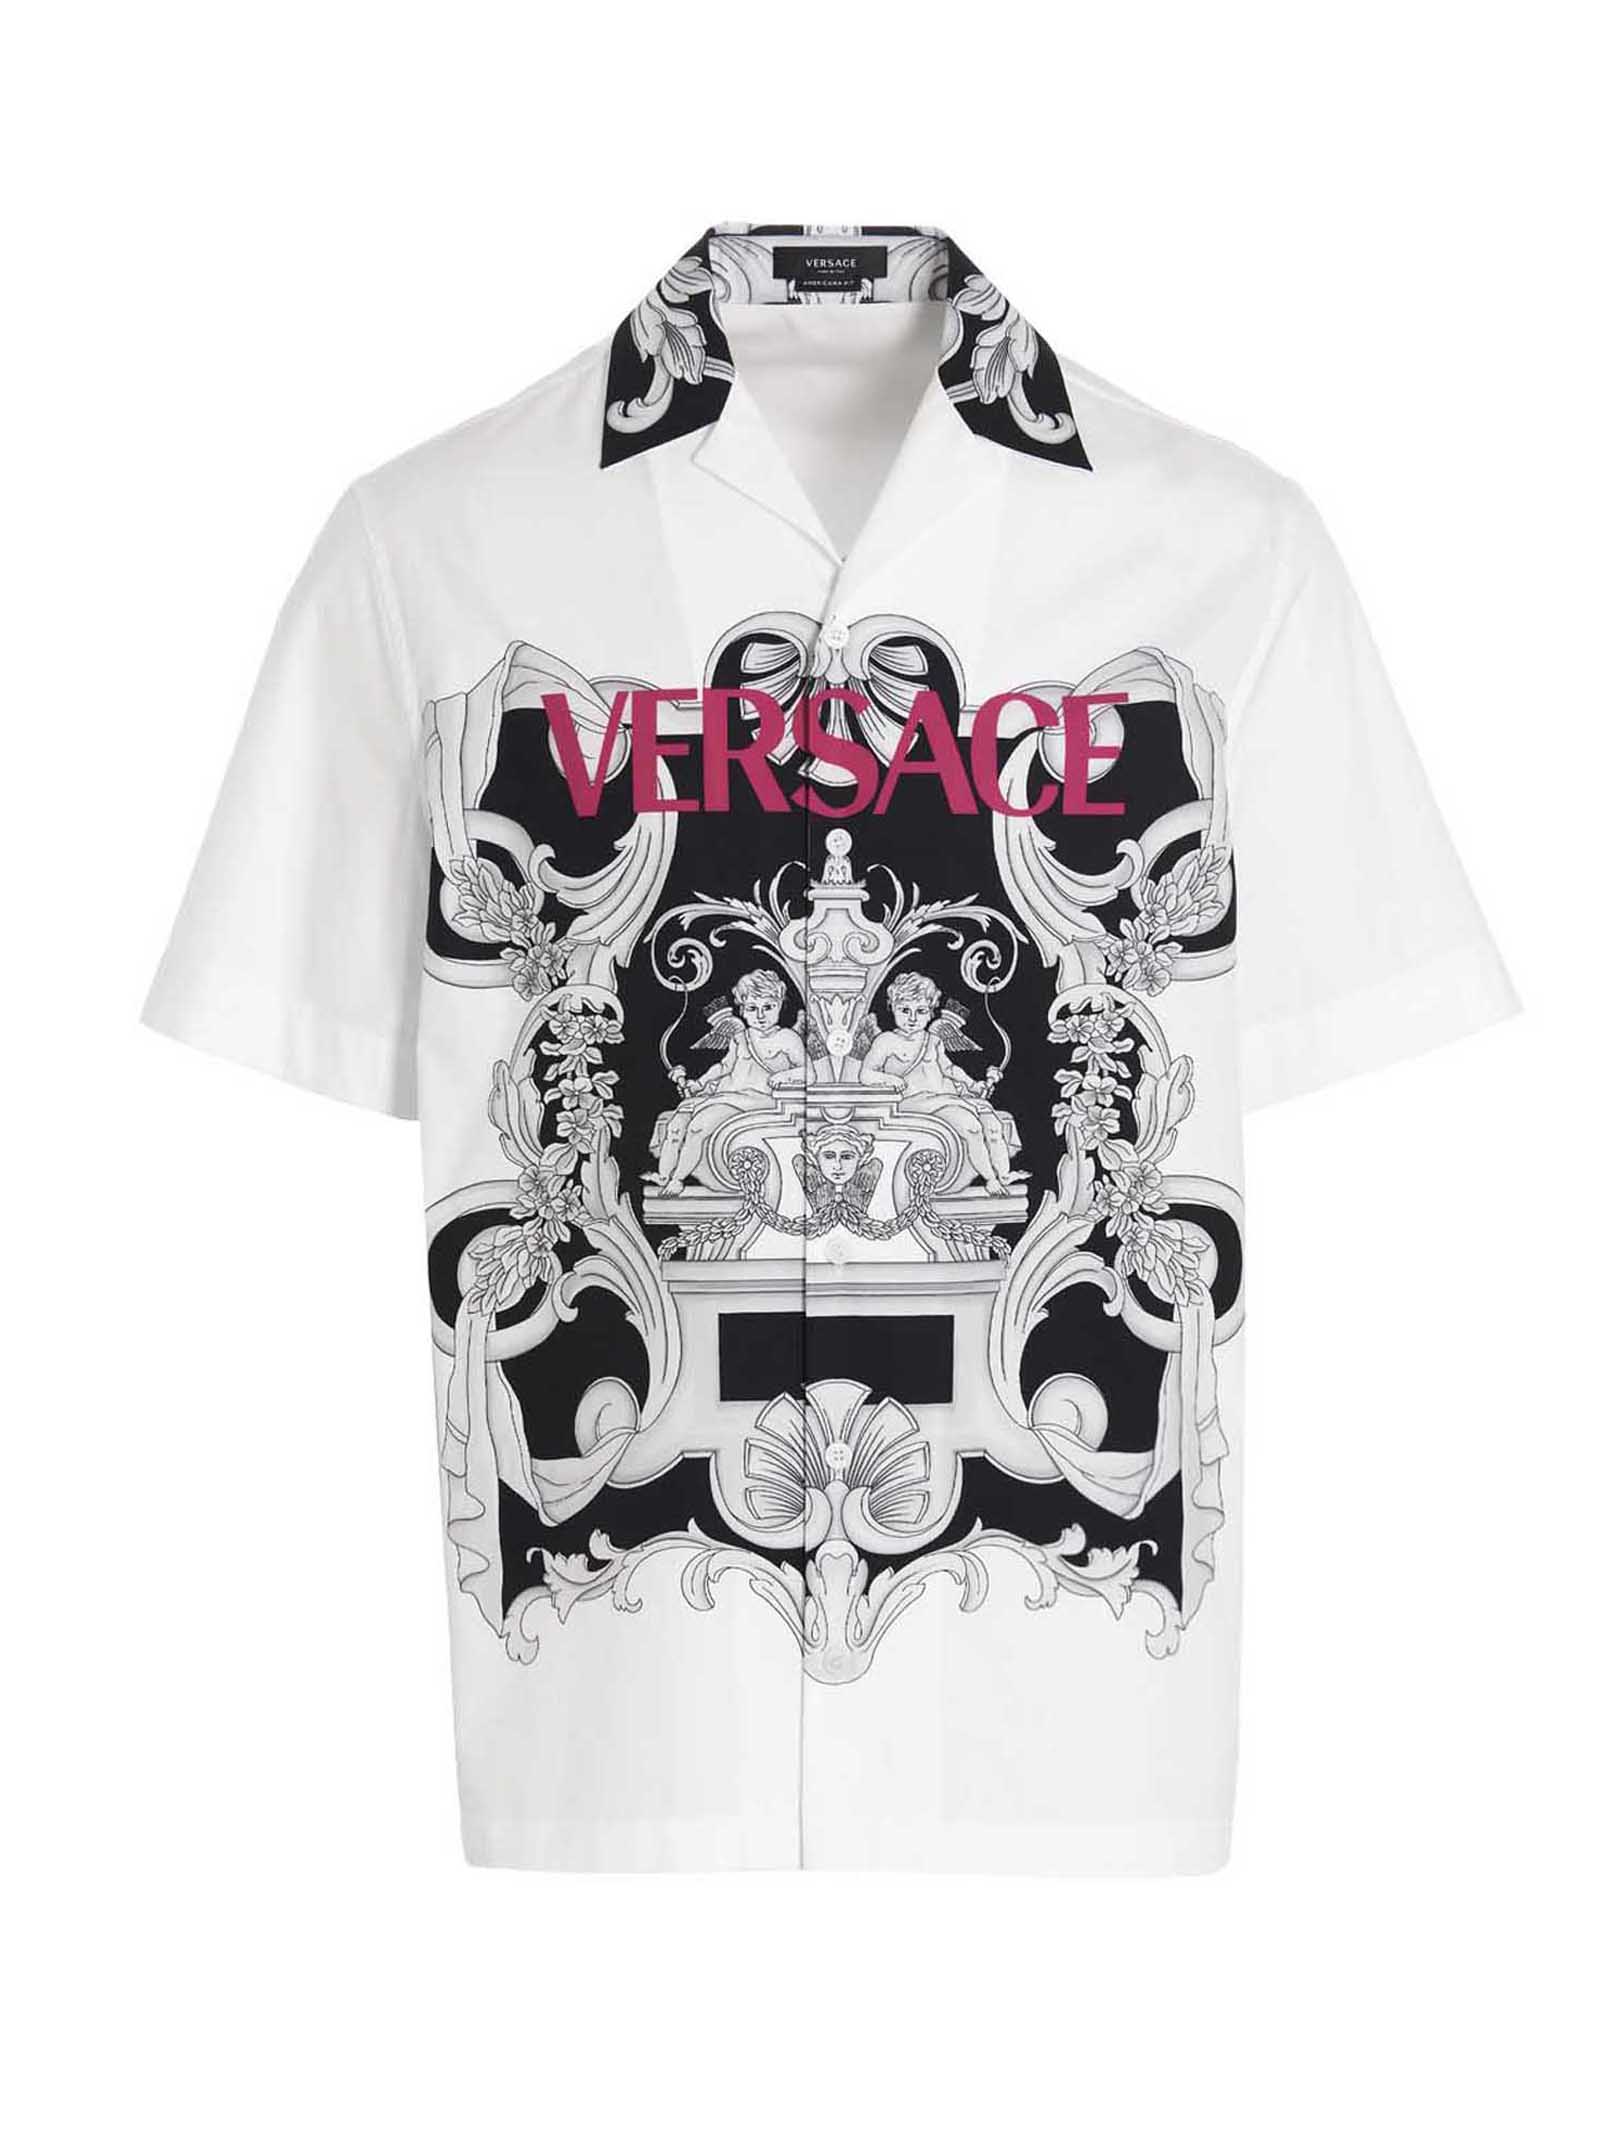 Versace logo Silver Baroque Shirt